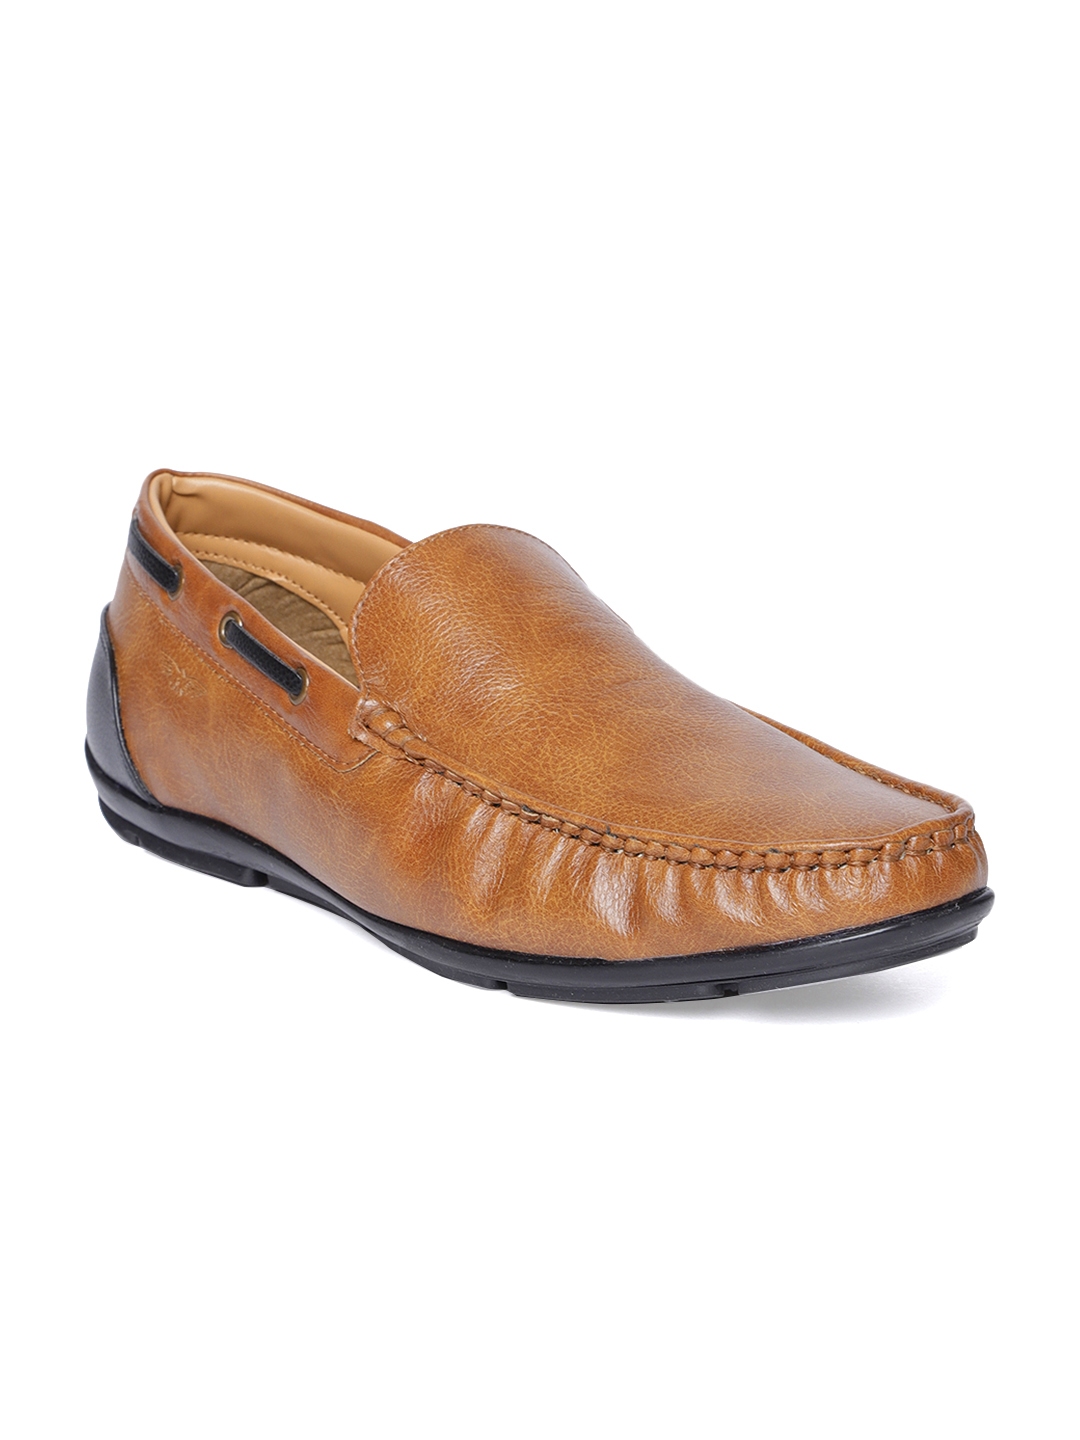 Buy Park Avenue Men Tan Brown Boat Shoes - Casual Shoes for Men ...